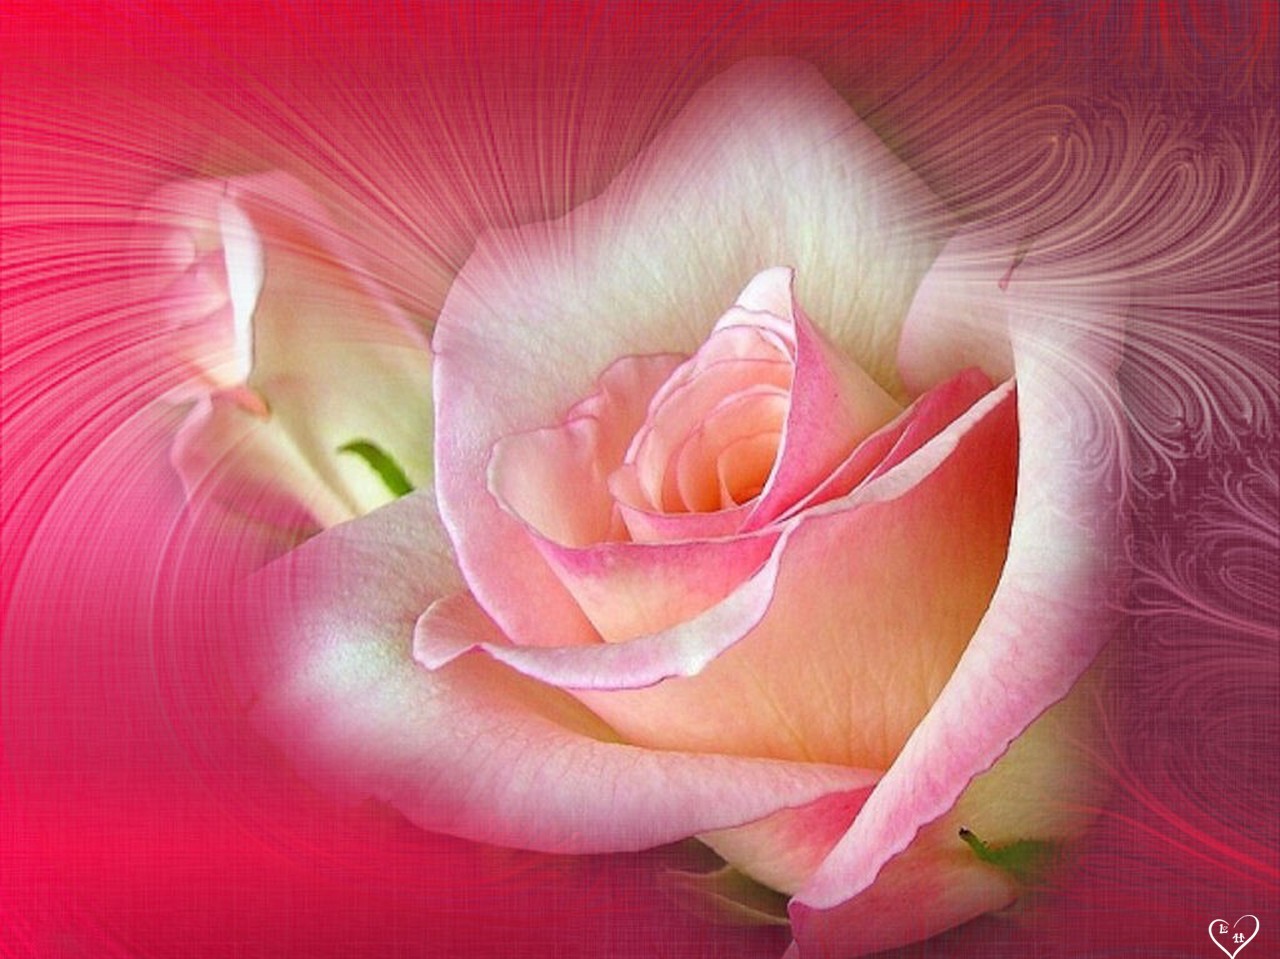 http://3.bp.blogspot.com/-tAz4GsKS_Qs/TvVozqRh9bI/AAAAAAAAd5w/rwjSdCyY_1M/s1600/Pink+Roses+%252821%2529.jpg